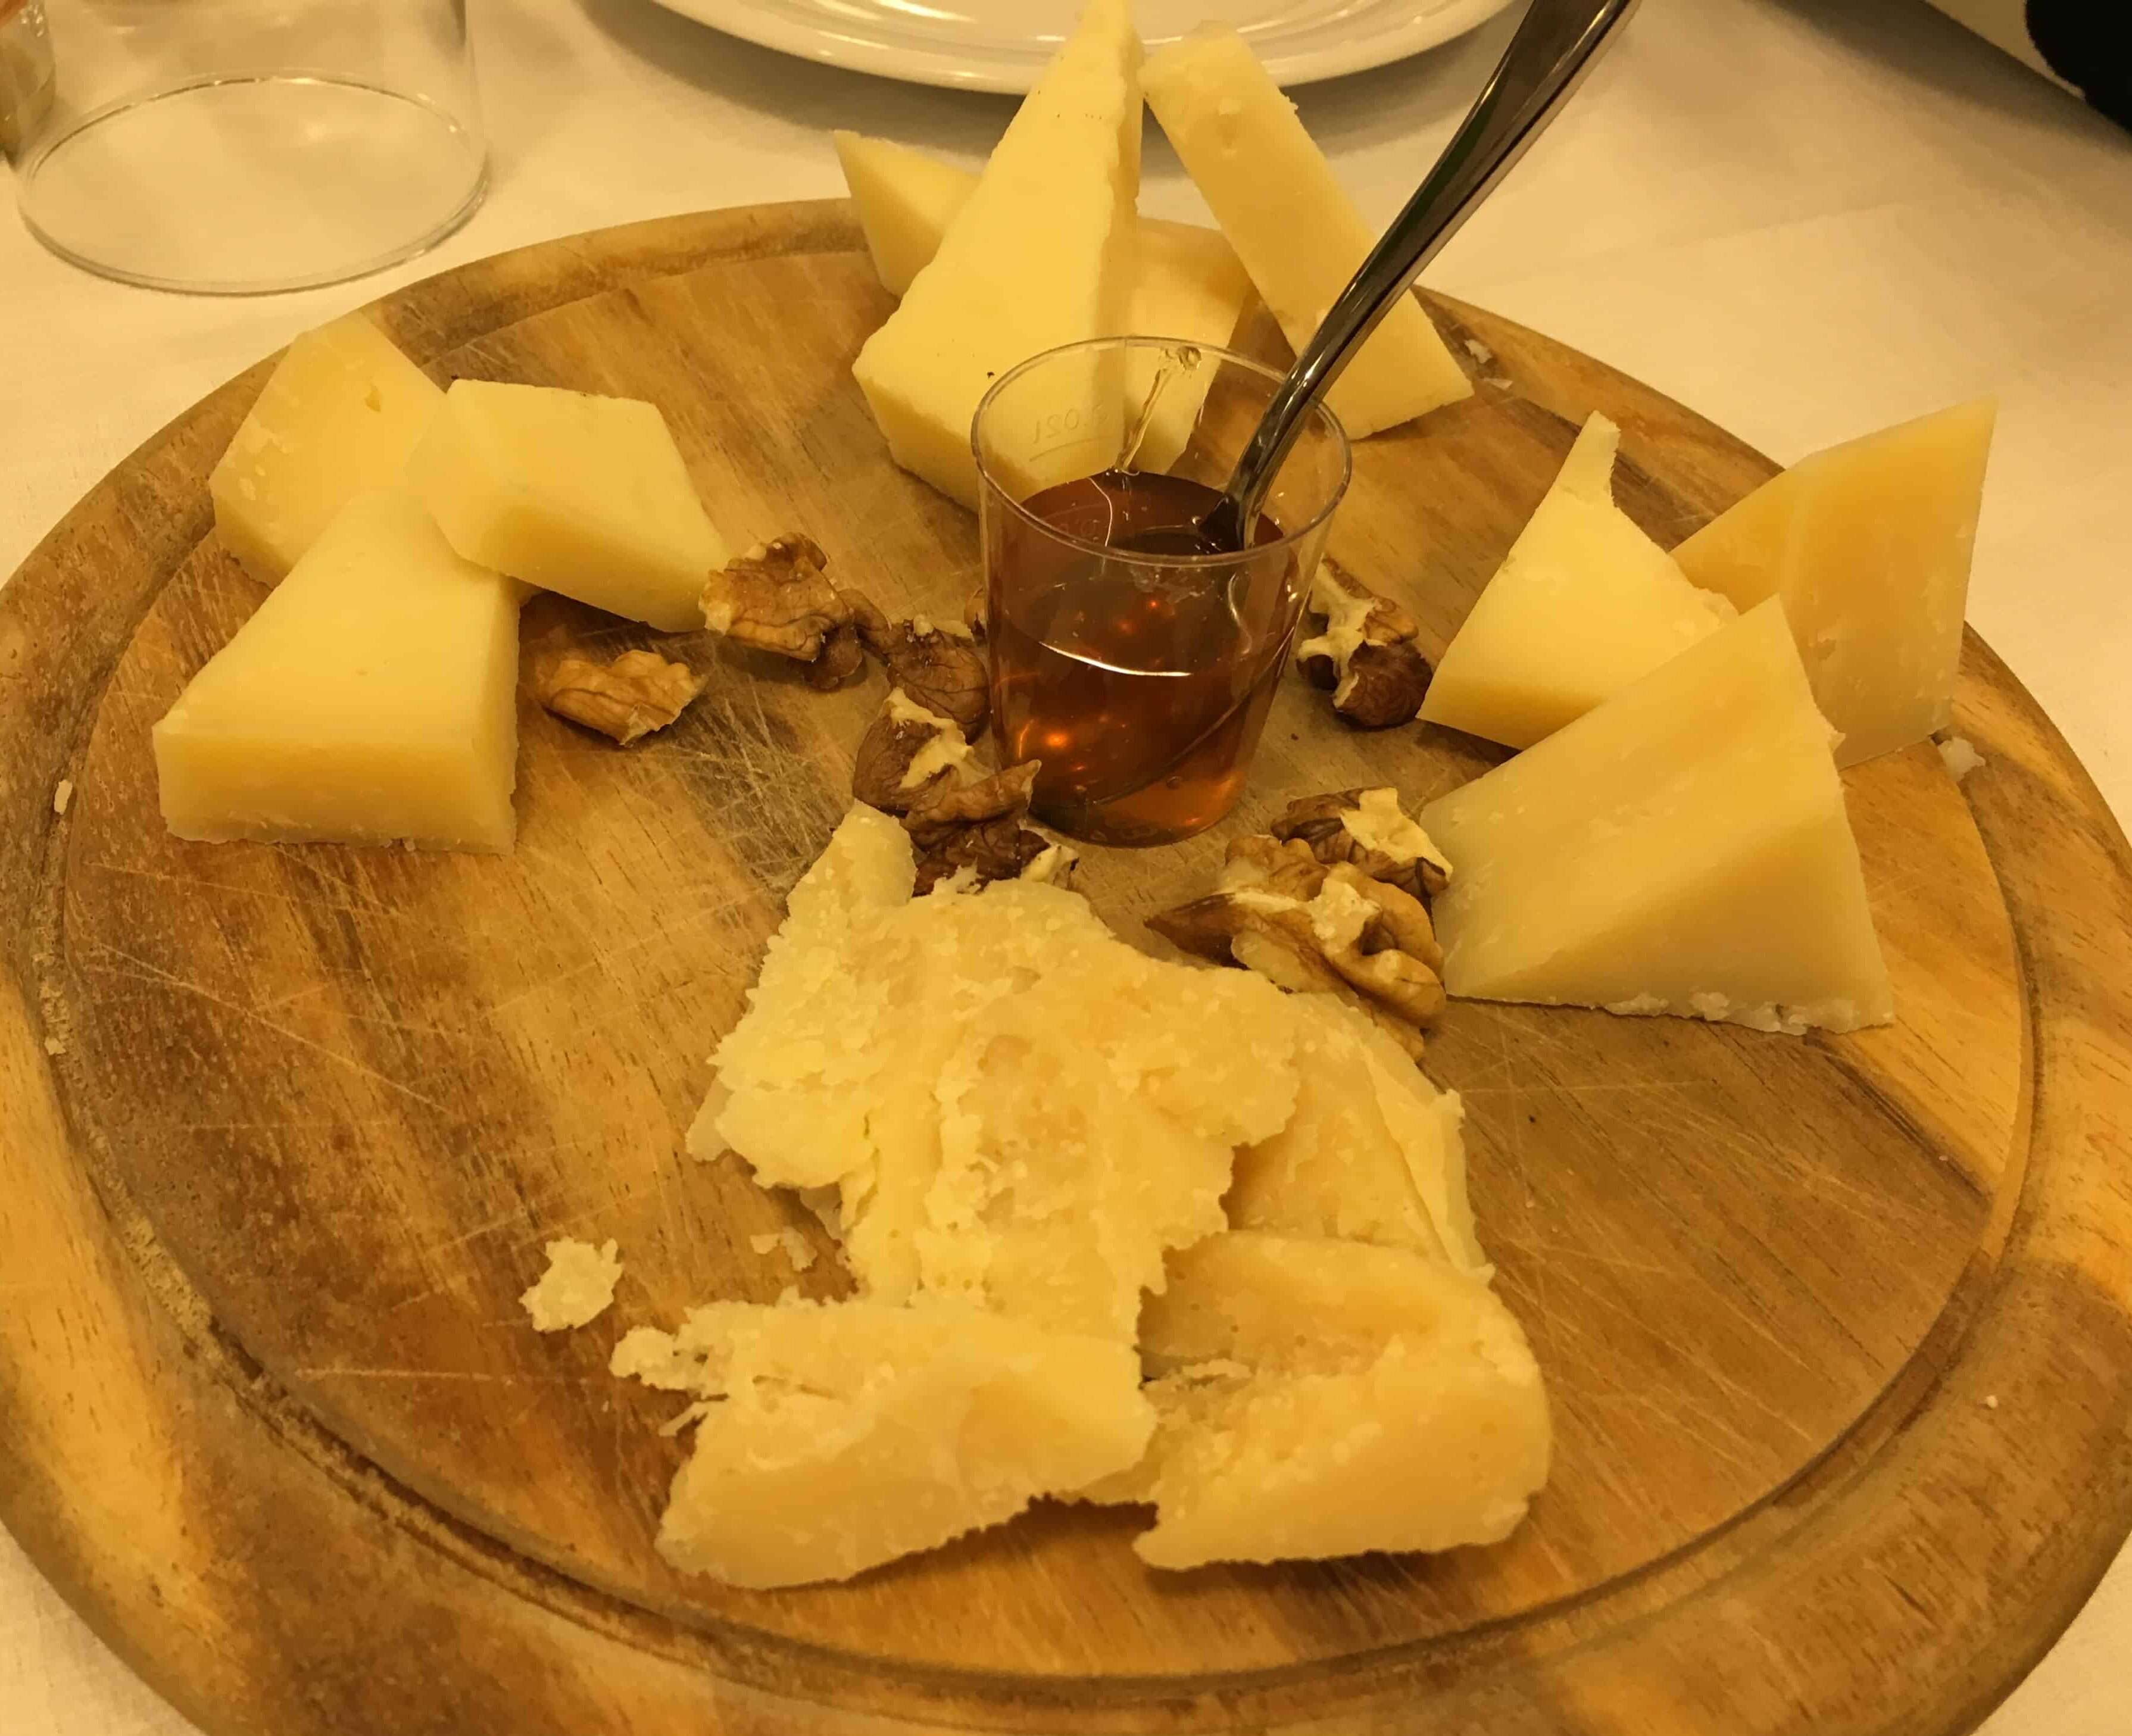 Cheese plate at Ristorante Scaligero in Verona, Italy